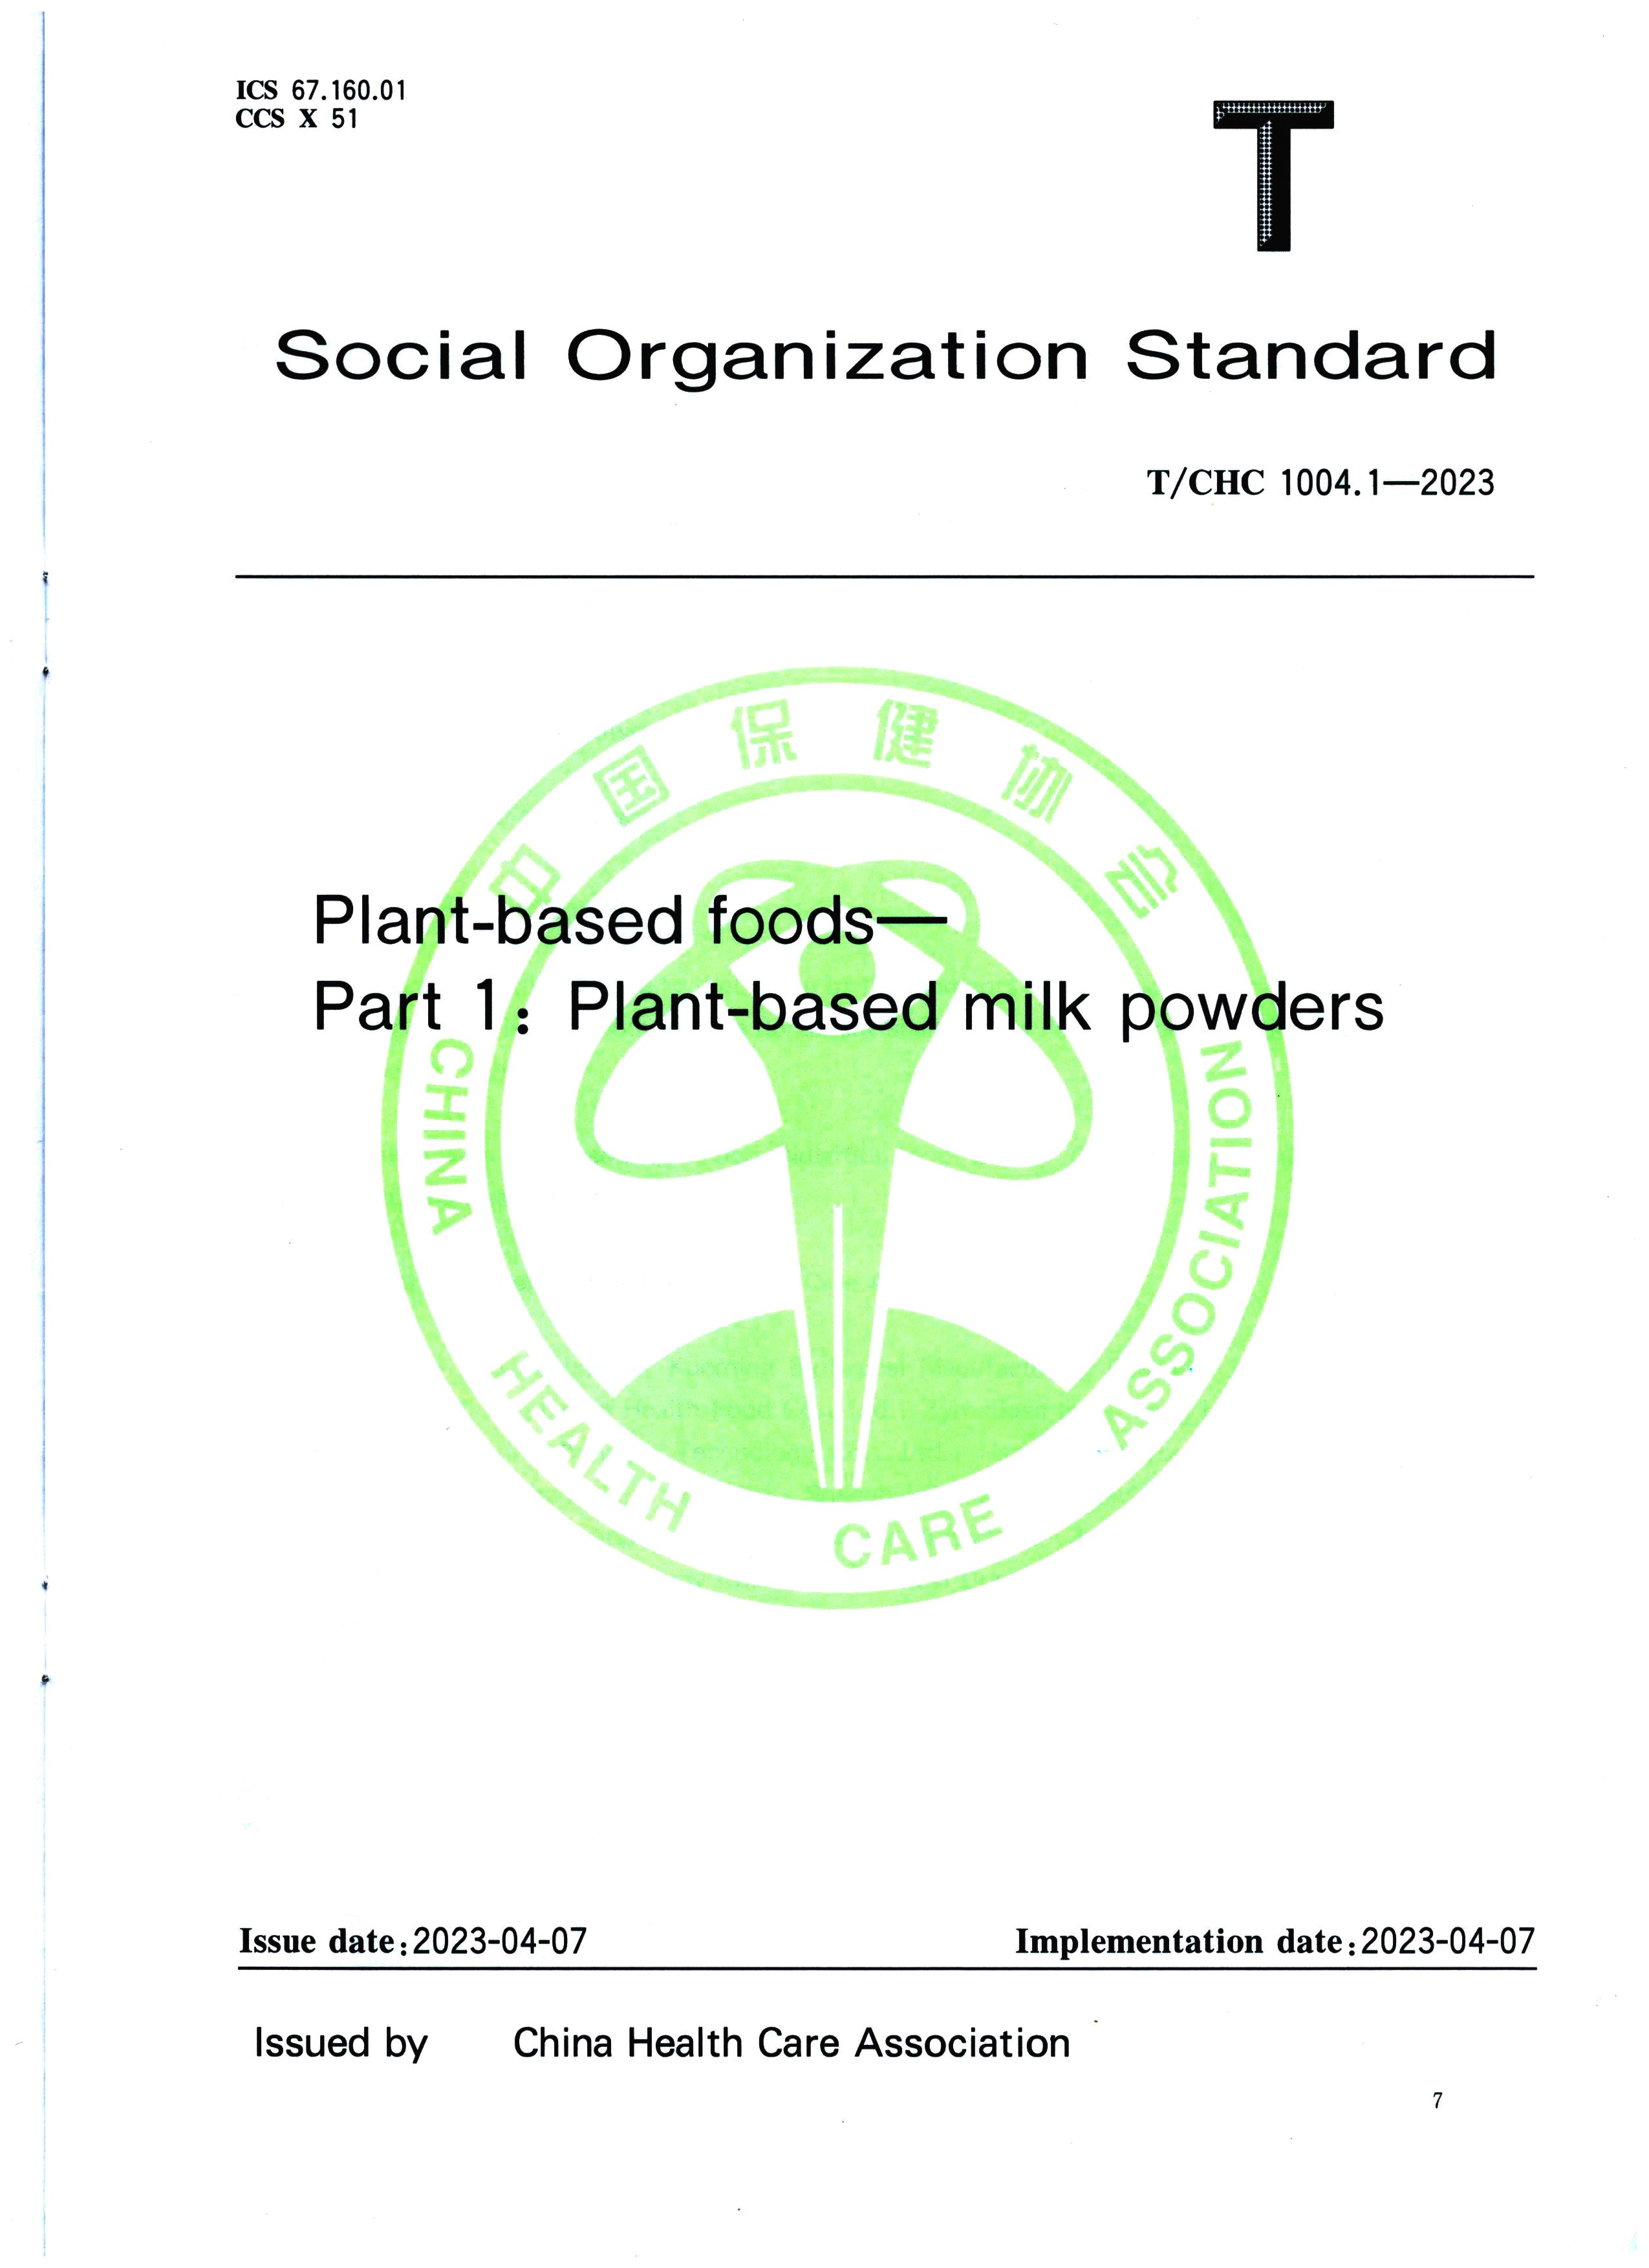 Se lanzó oficialmente el estándar grupal de 'Leche en polvo a base de plantas Parte 1 de alimentos a base de plantas' publicado por China Standards Press